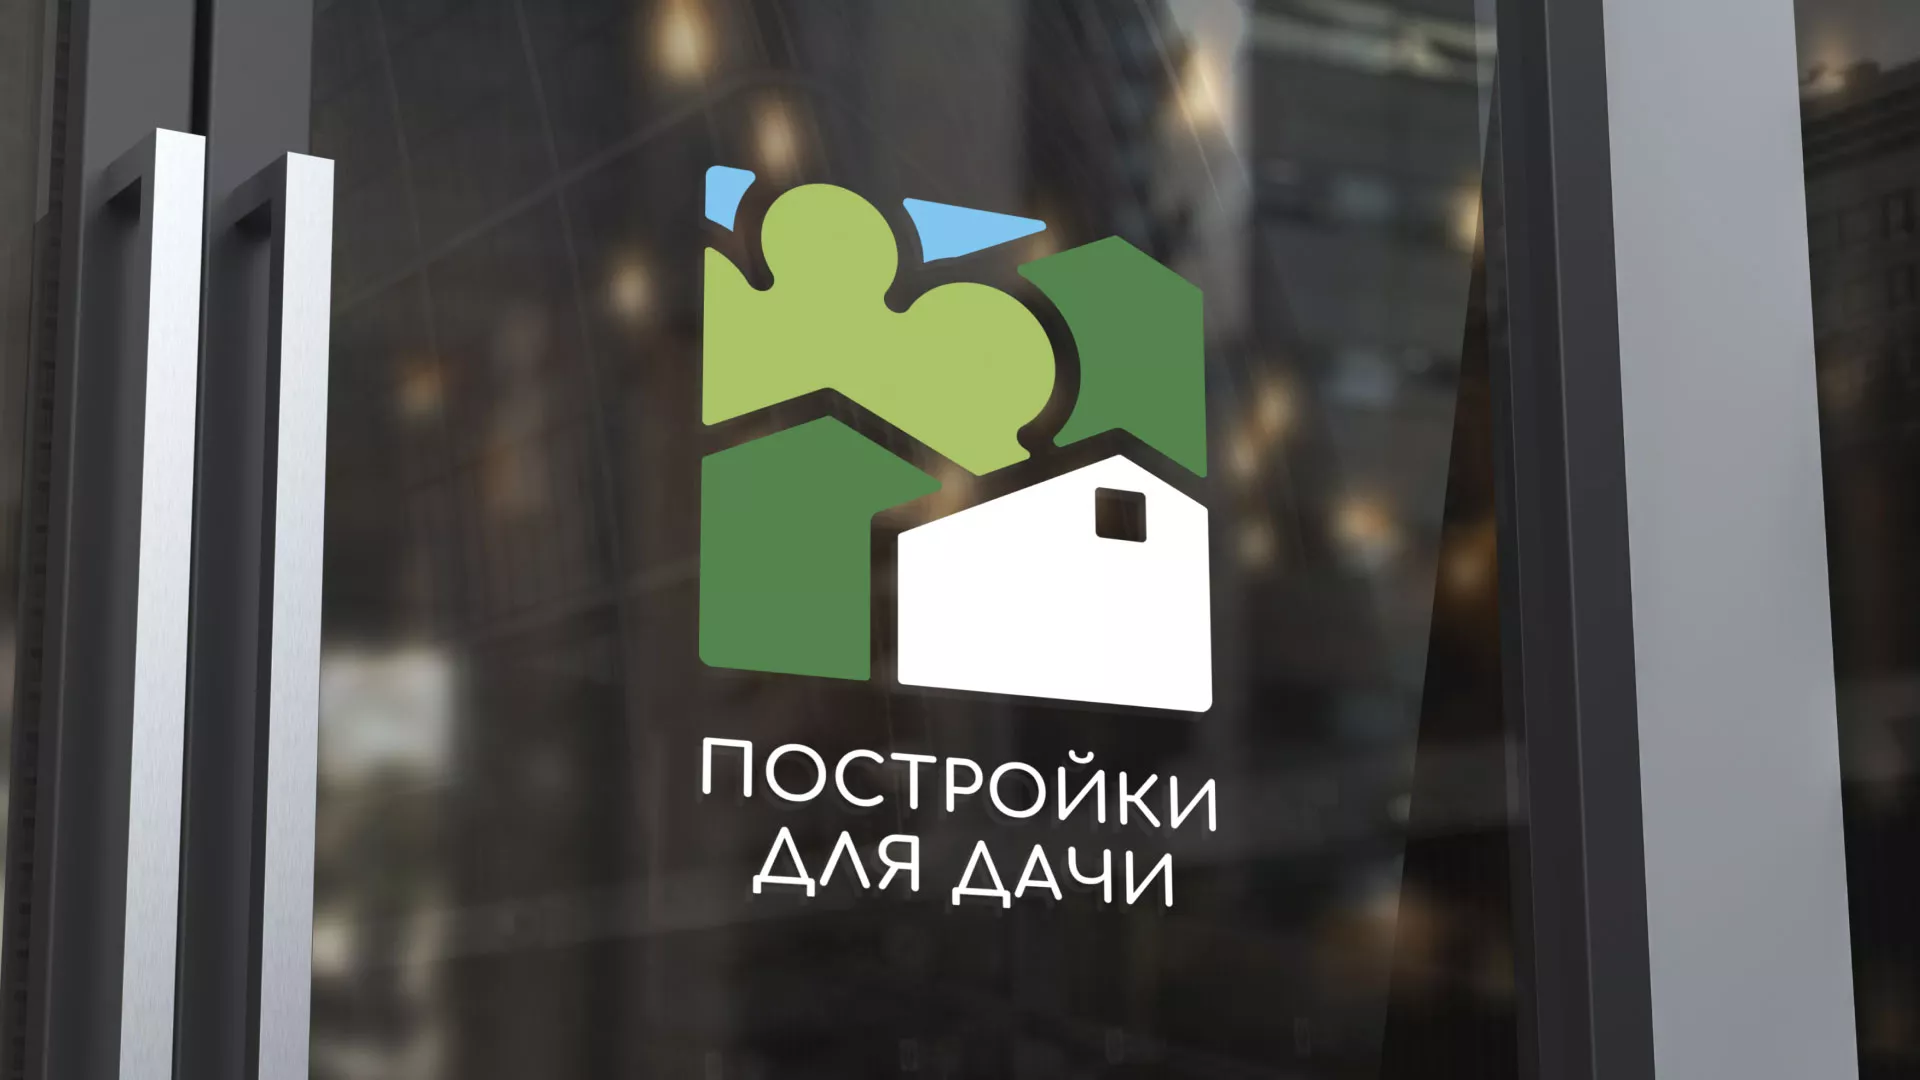 Разработка логотипа в Мамоново для компании «Постройки для дачи»